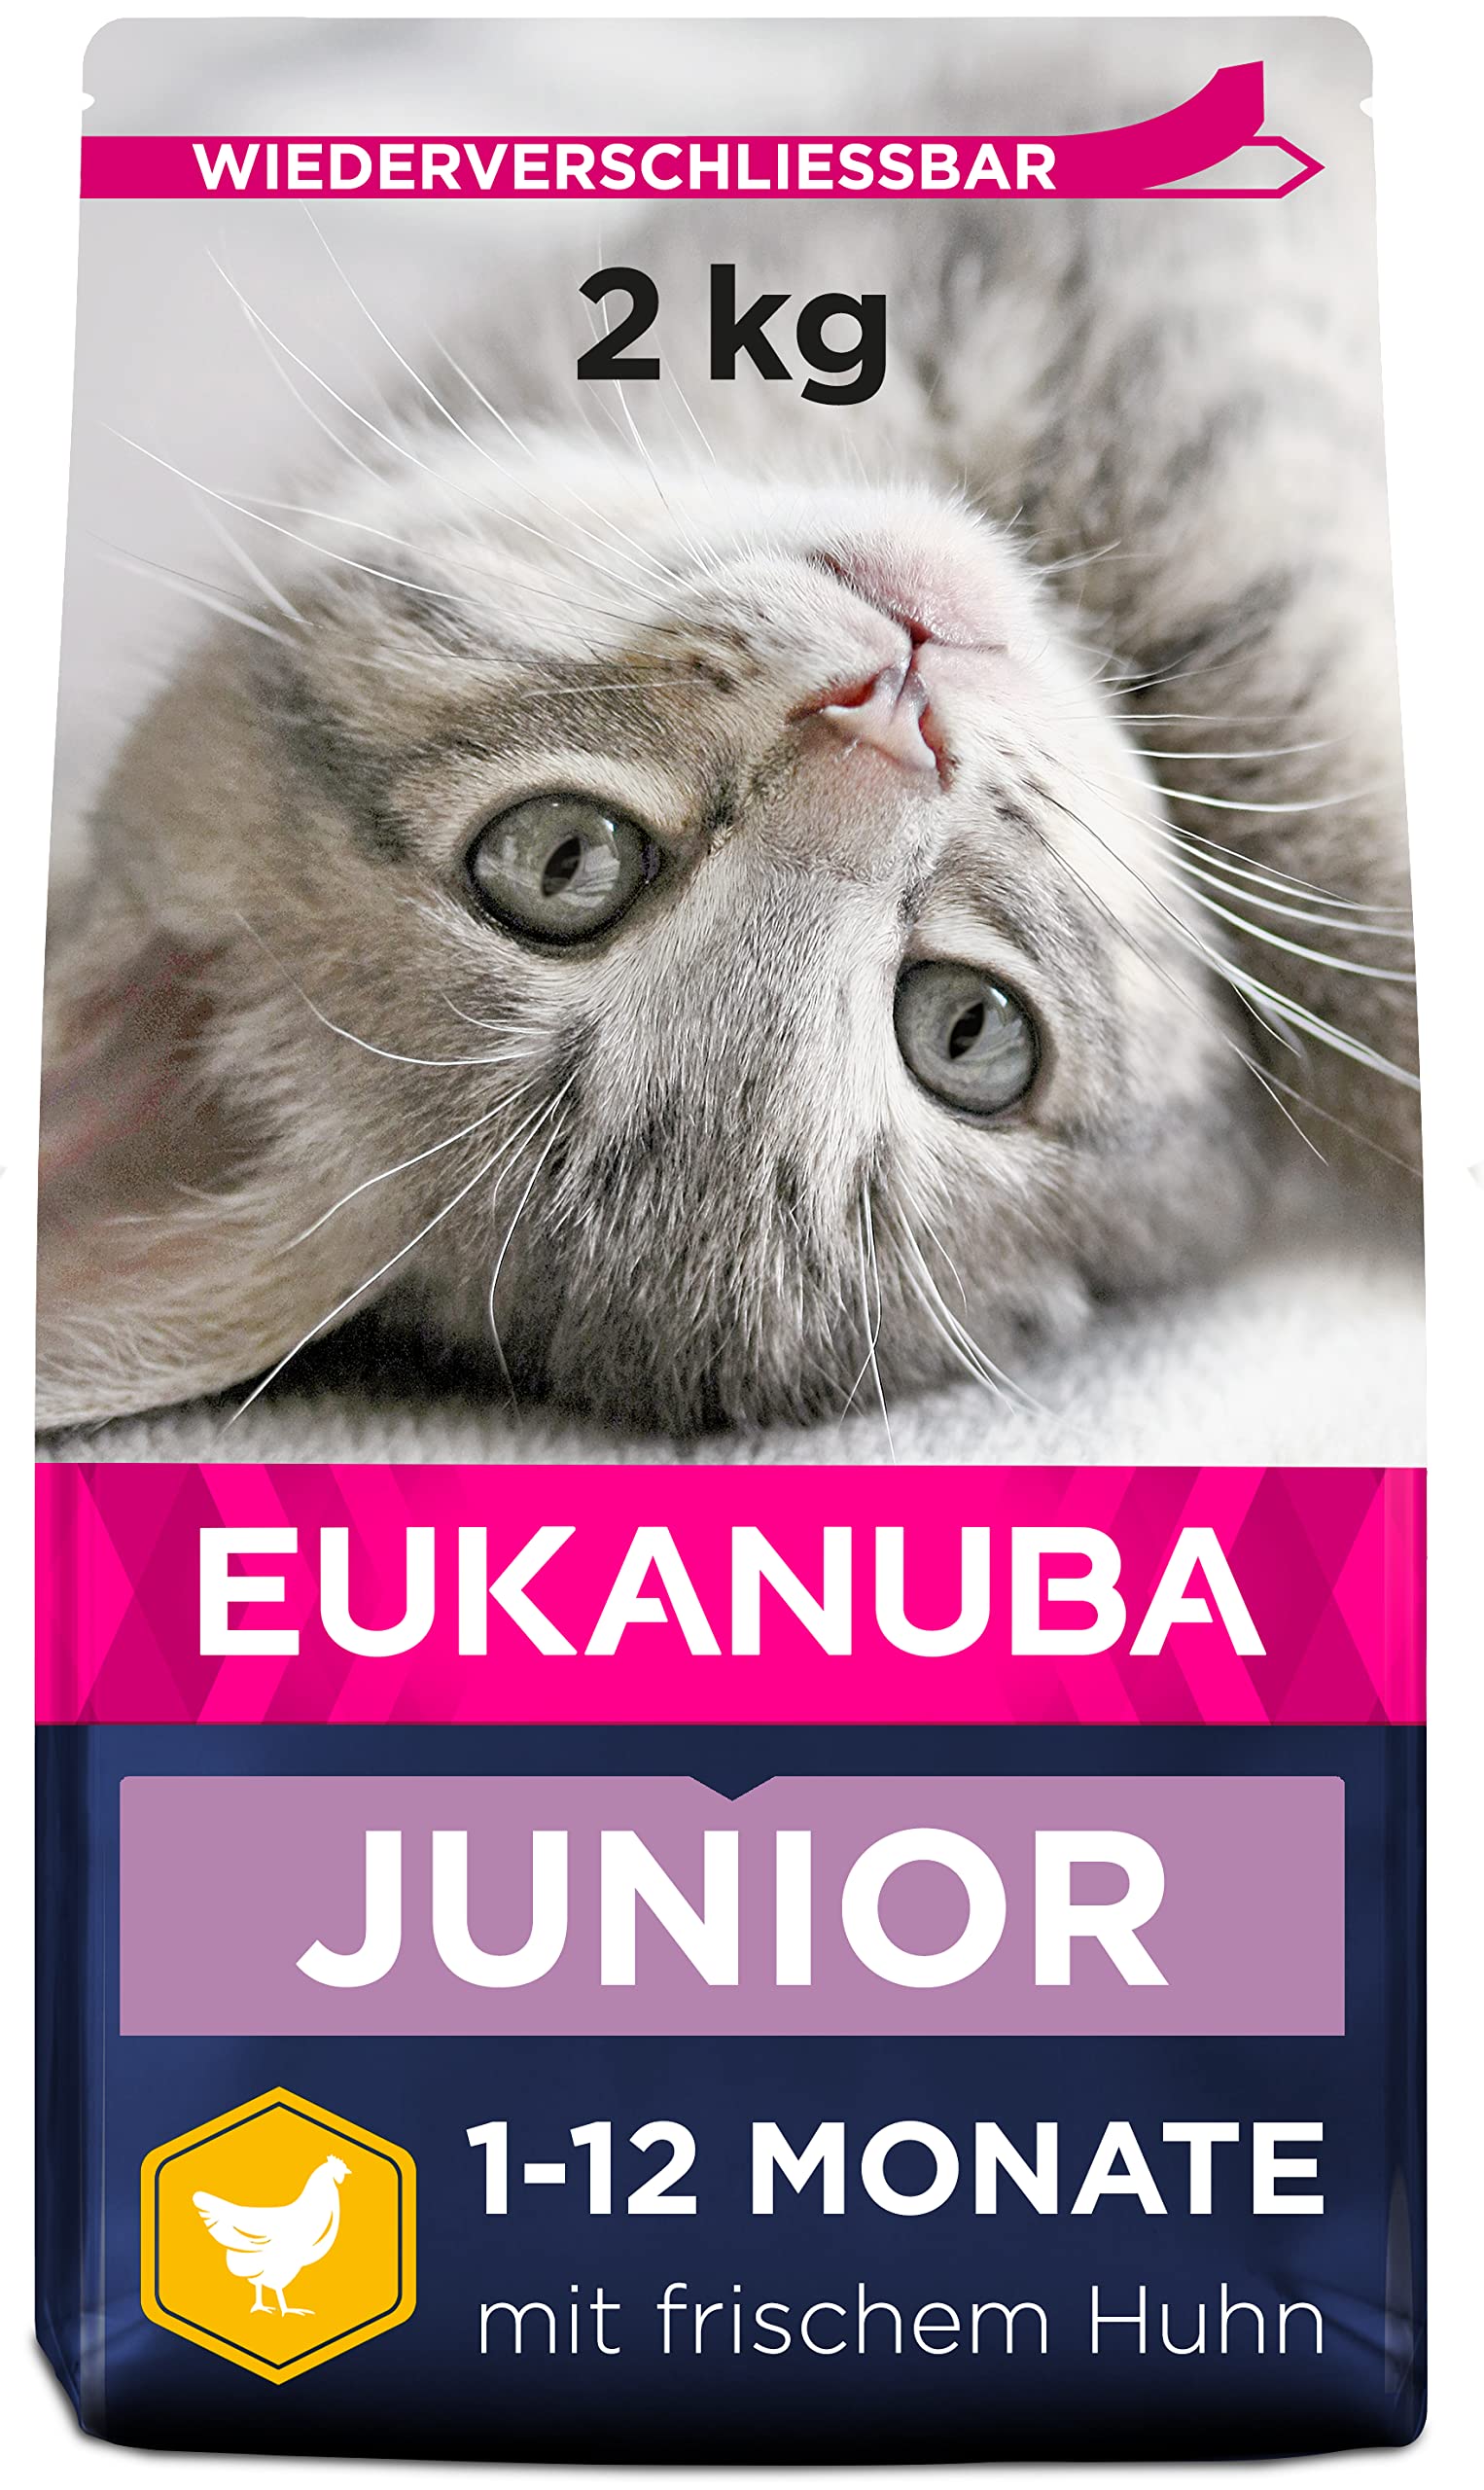 Eukanuba Junior Katzenfutter trocken - Premium Trockenfutter für Kitten von 1-12 Monate, fördert gesundes Wachstum, hoher Fleischanteil, 2 kg